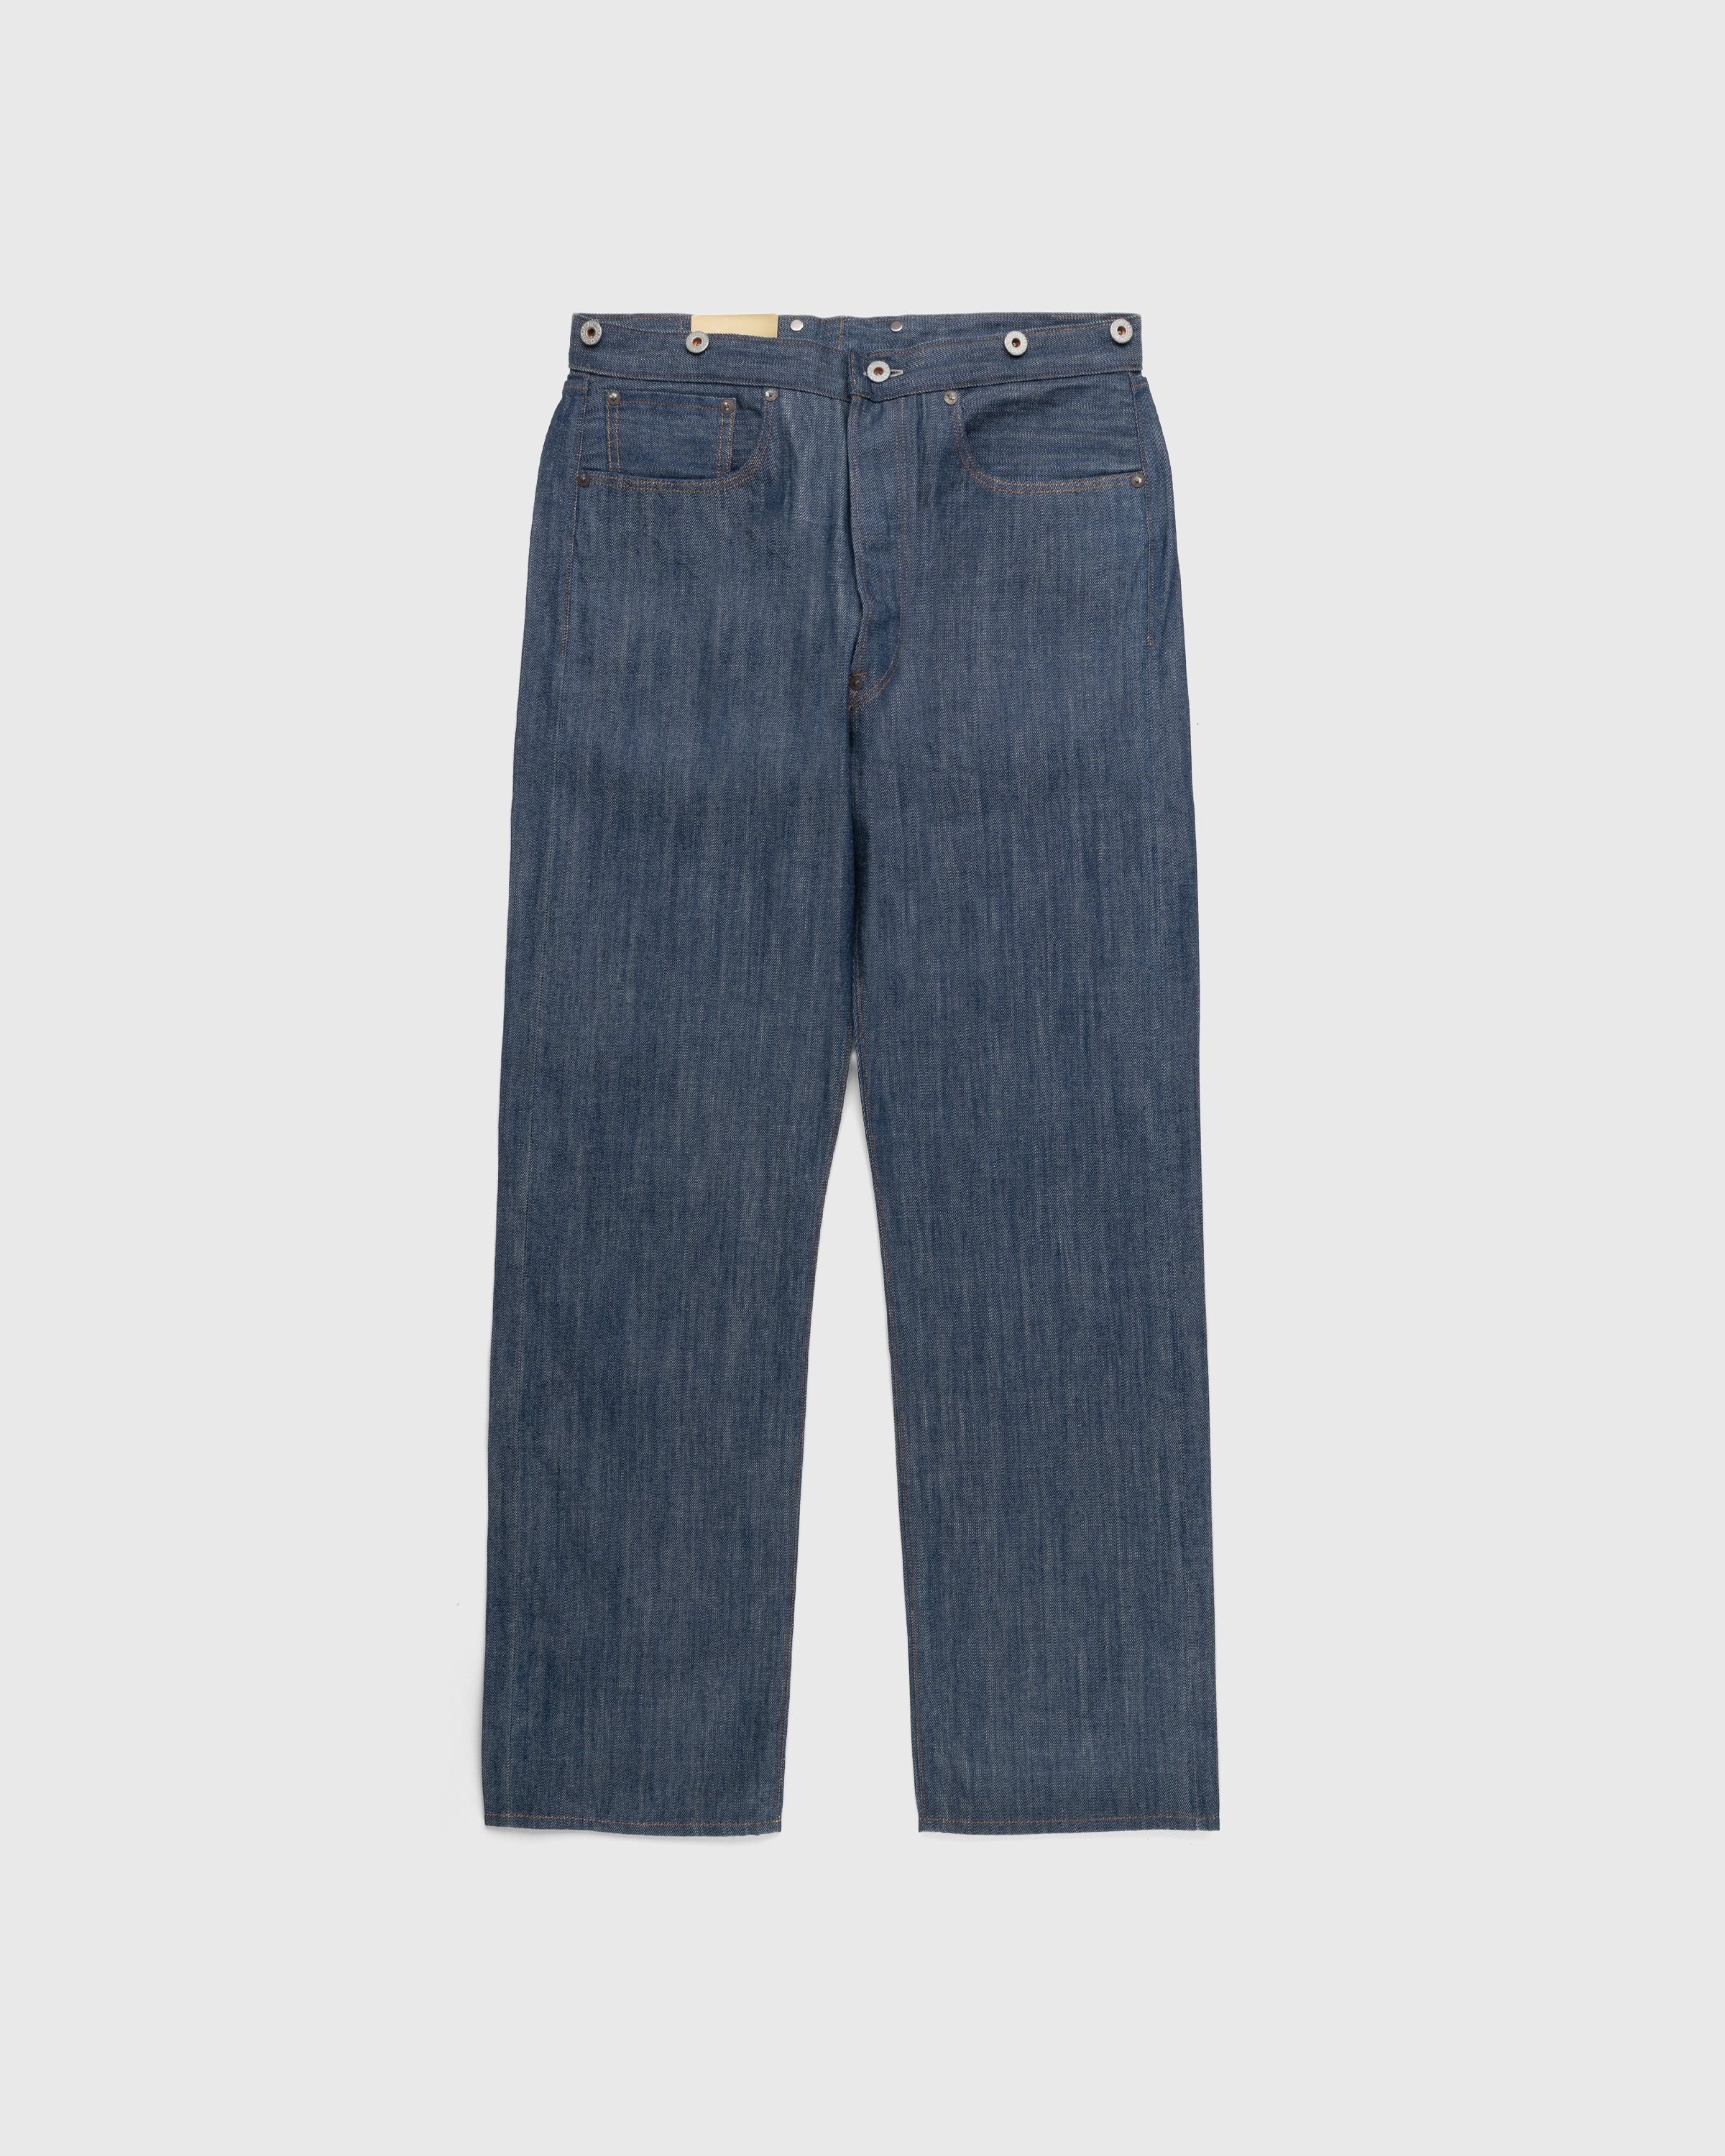 Levi's - 1890 501 Jeans Dark Indigo Flat Finish - Clothing - Blue - Image 1